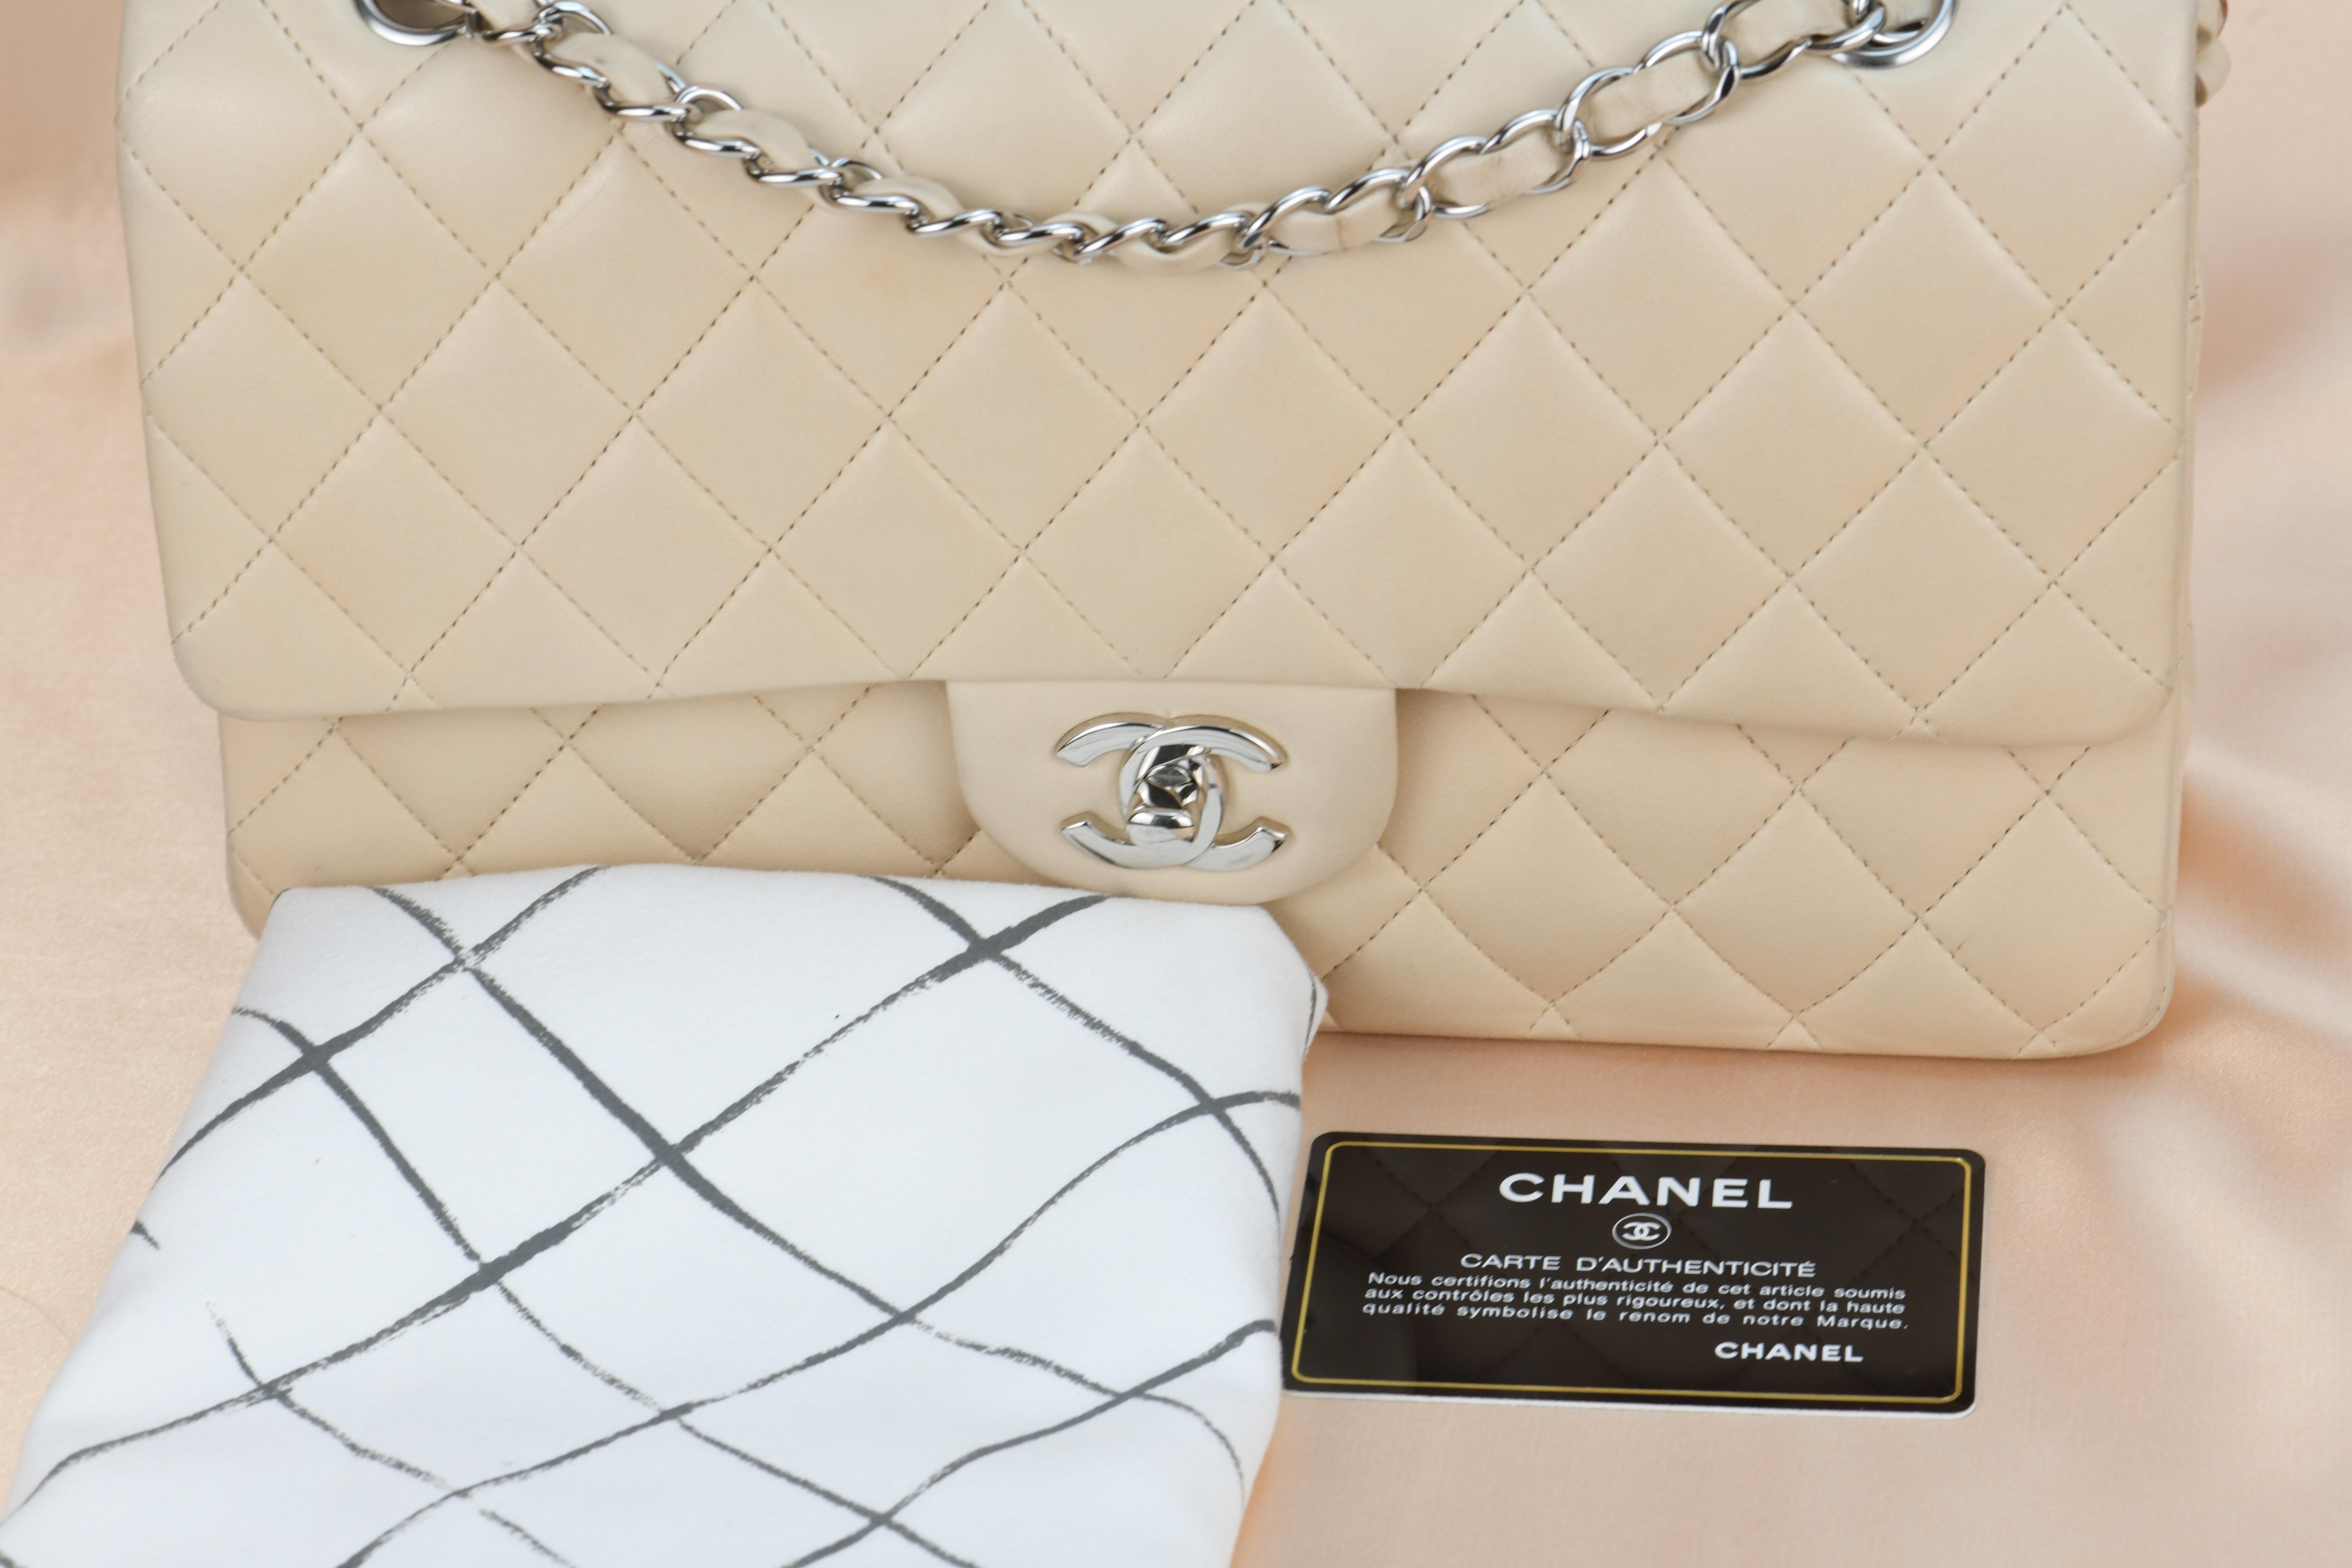 Marke	Chanel
Modell	Zeitloser Klassiker mit doppelter Klappe 
Laufende Nr.	13******
Farbe	Beige
Datum	Ca. 2009-2010
Metall	Silber
Material	Lammfell Leder
Messungen	Ca. 10in L x 2.5in W x 6.5in H
Bedingung	Ausgezeichnet 
Kommt mit	Chanel Staubbeutel